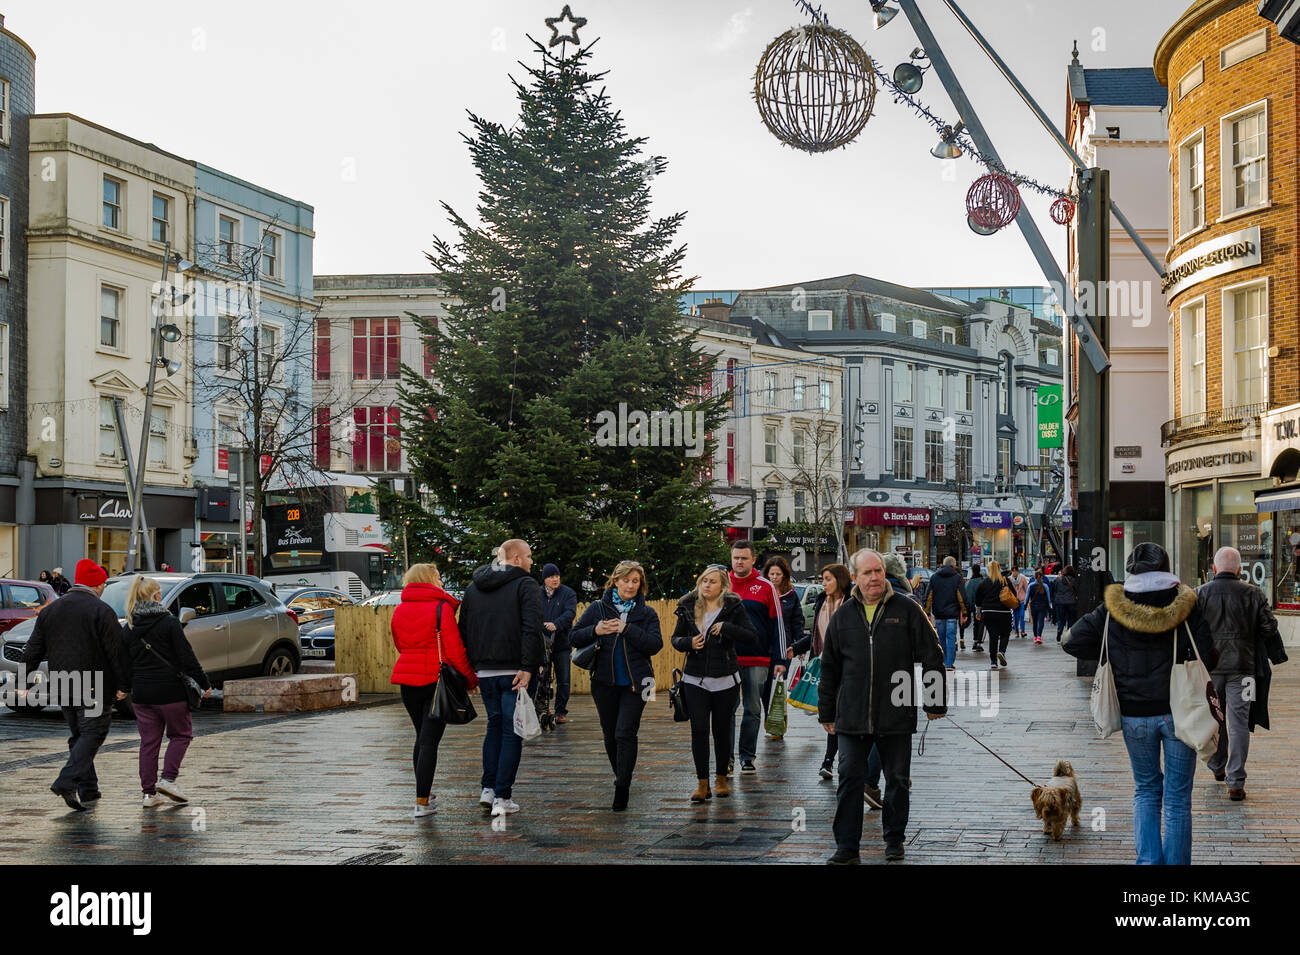 Arbre de Noël sur Patrick Street, Cork, Irlande sur une journée de shopping bien remplie avec les consommateurs avant Noël. Banque D'Images